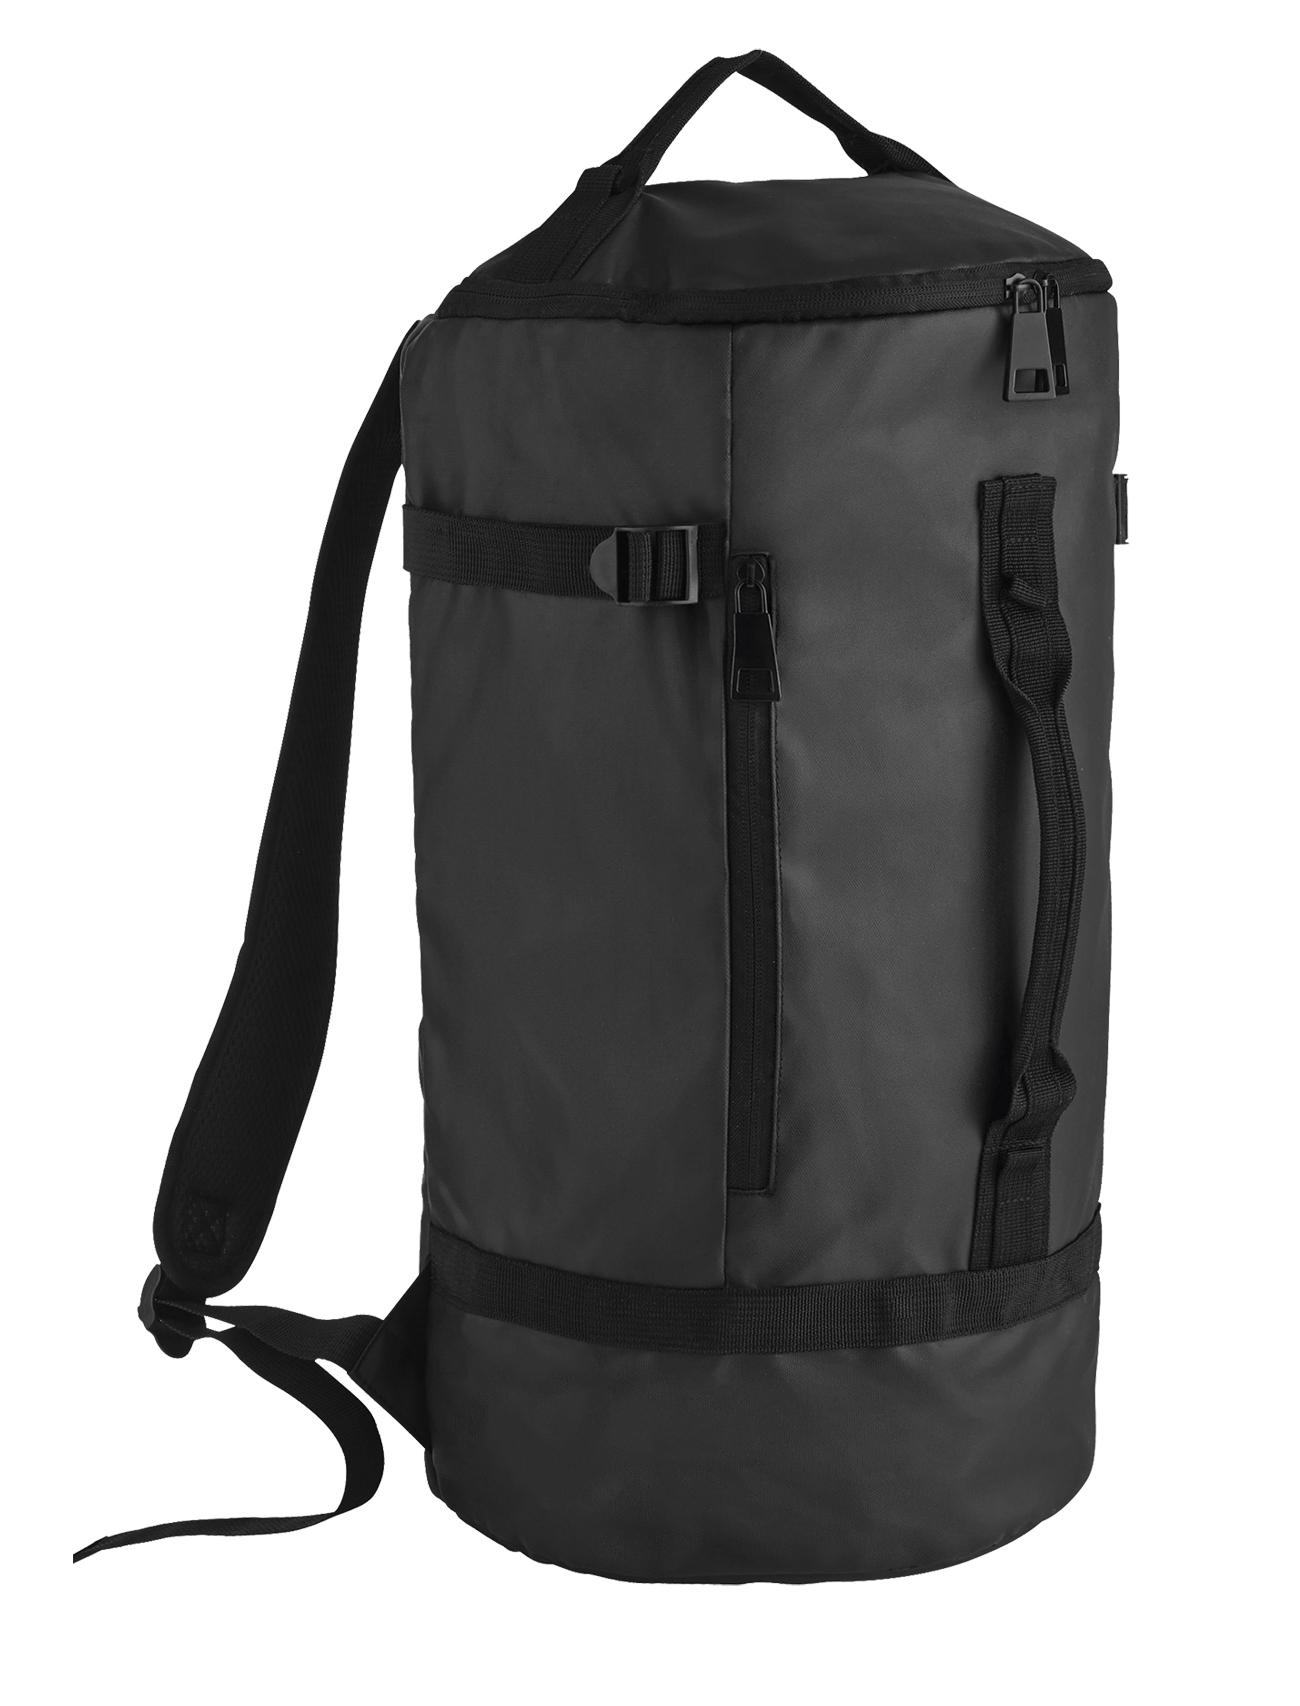 Изображение товара: SOLS-CARBON спортивный рюкзак-усиленный Рюкзак-Большая емкость-ручки для дополнительного комфорта-кожаный эффект